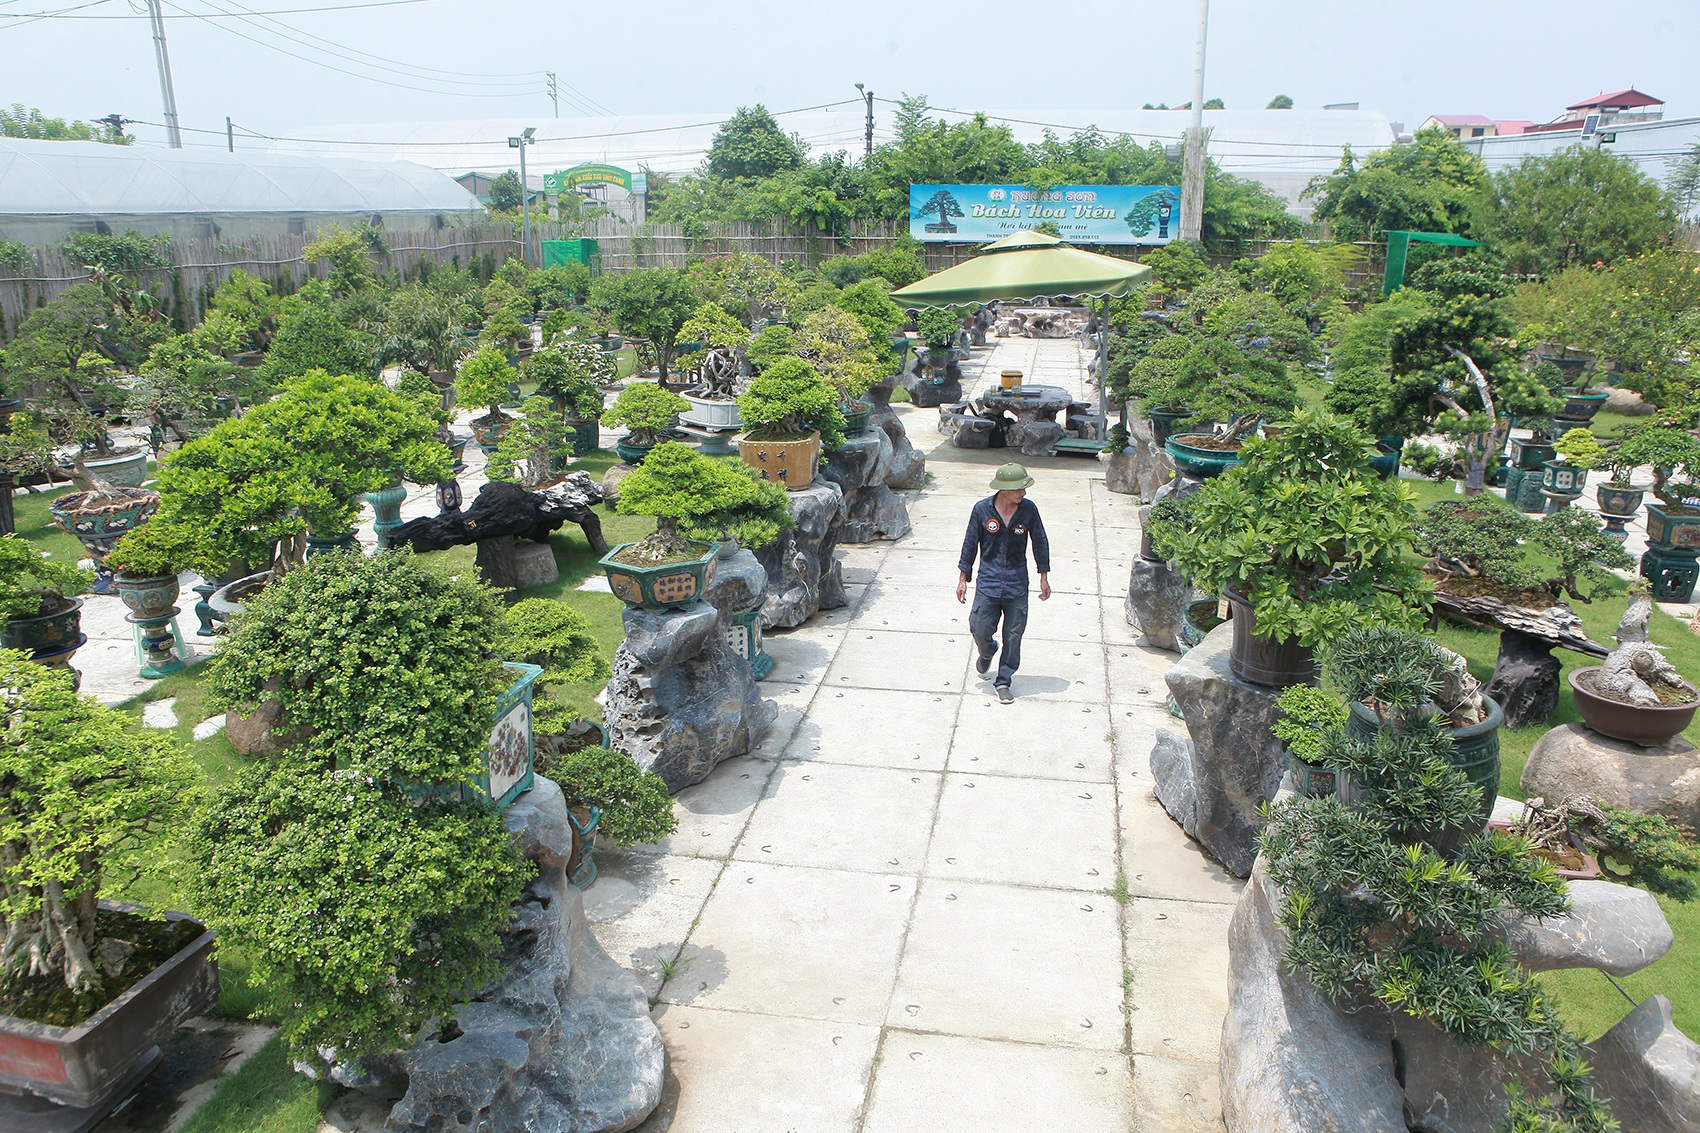 Mục sở thị khu vườn gần 1.000 cây cảnh bonsai hiếm có đất Hà Thành - 1